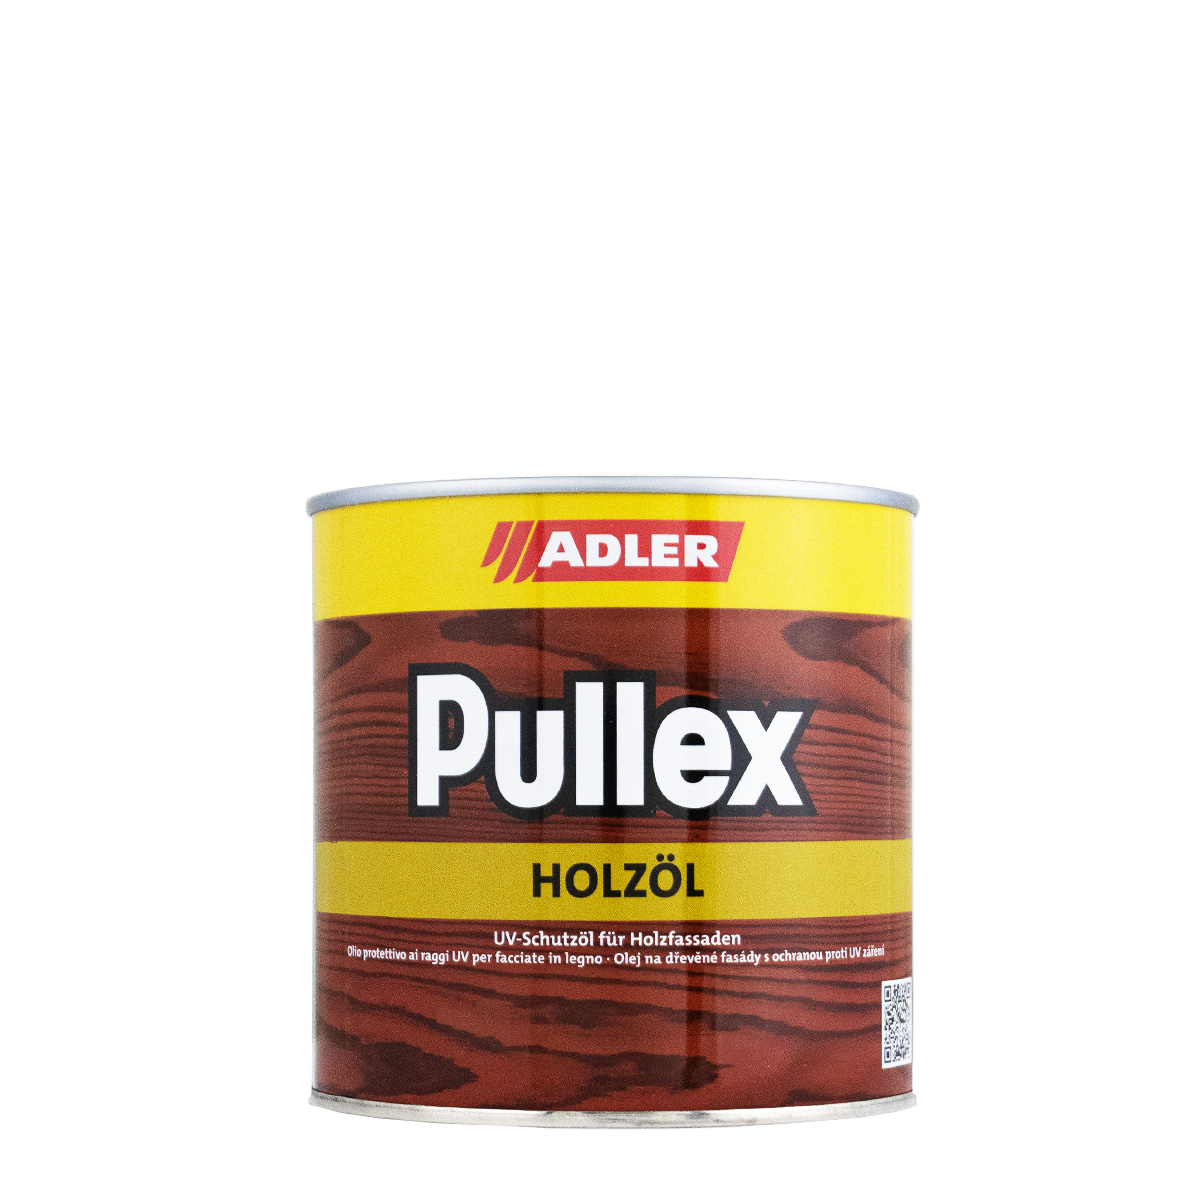 Adler Pullex Holzöl 0,75L farblos, UV-Schutzöl für Holzfassaden